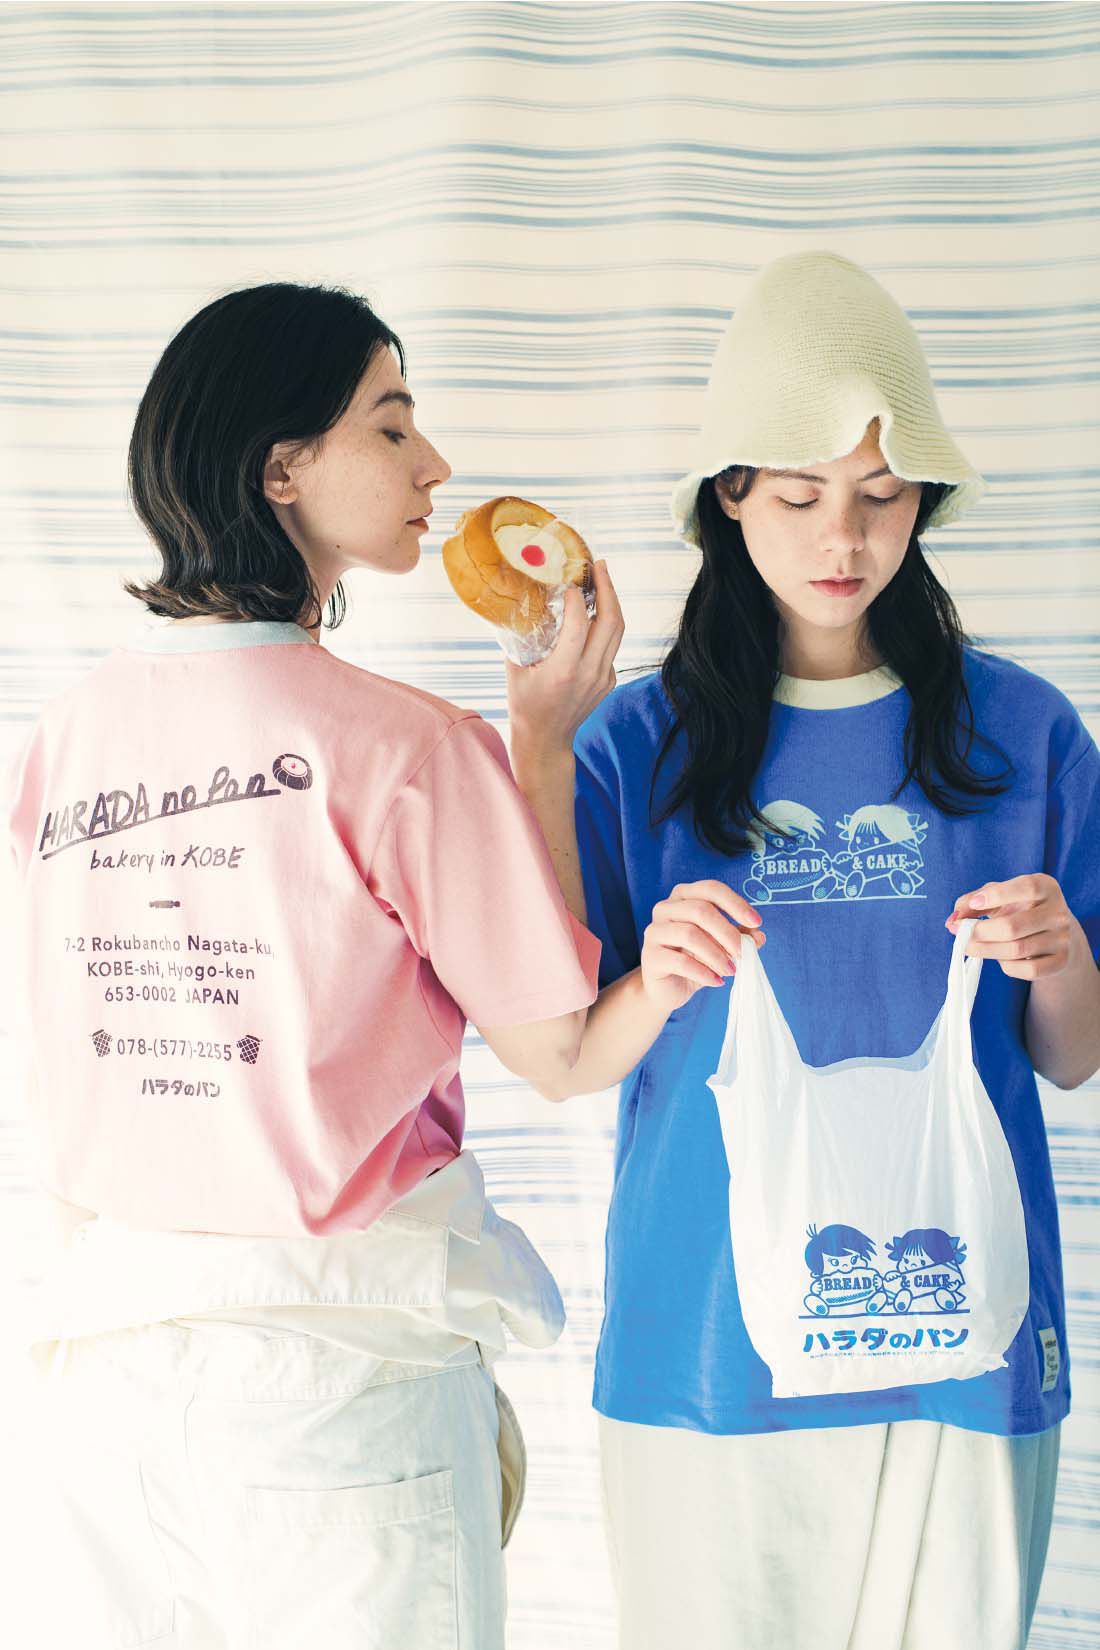 Live in  comfort|Live love cottonプロジェクト リブ イン コンフォート神戸のベーカリーハラダのパンさんとつくったオーガニックコットンのレトロかわいいTシャツ〈ベビーピンク〉